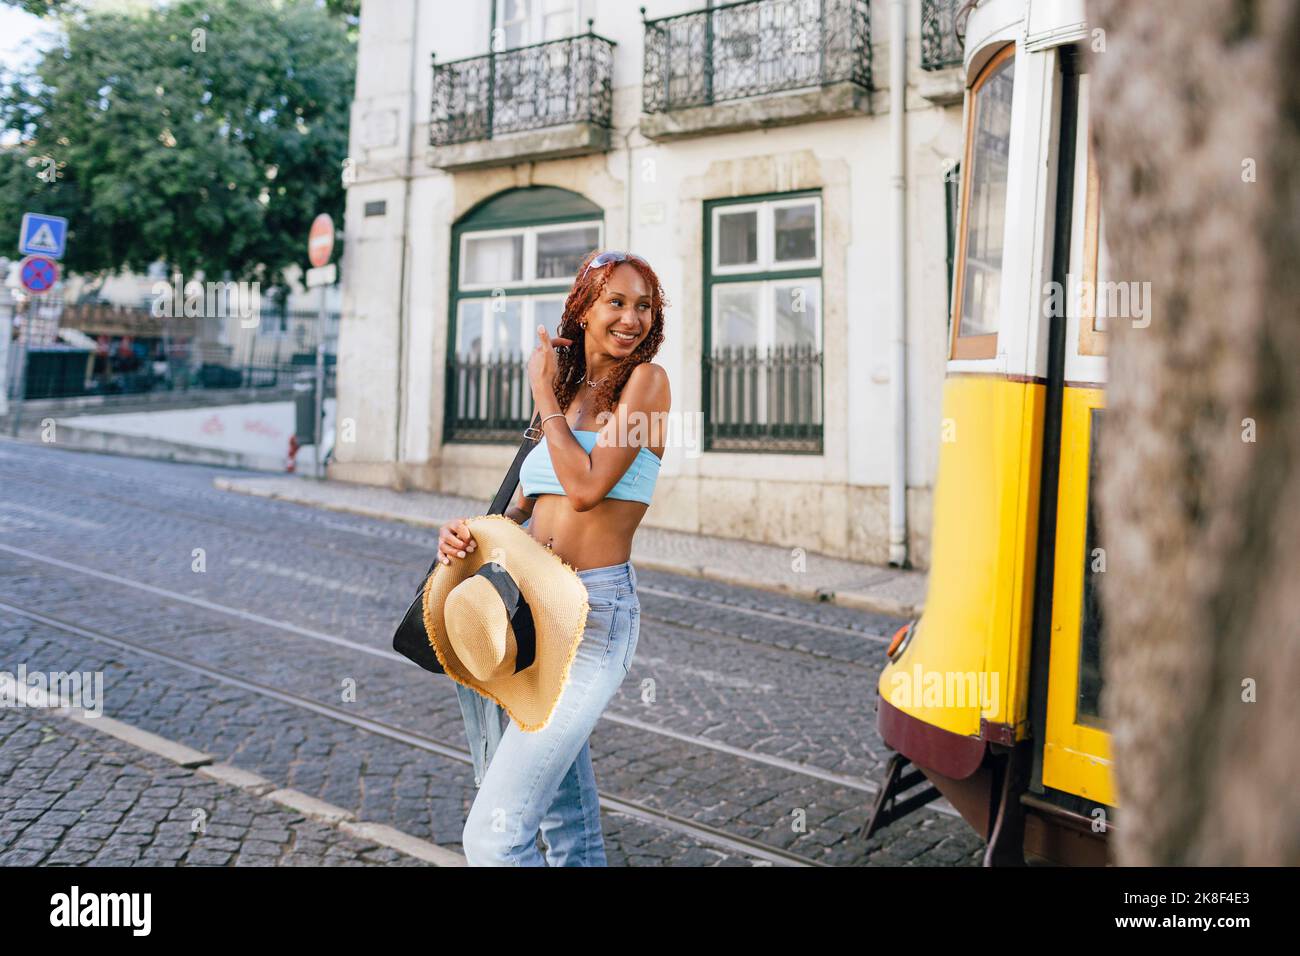 Glückliche junge Frau, die mit der Seilbahn auf der Straße steht Stockfoto